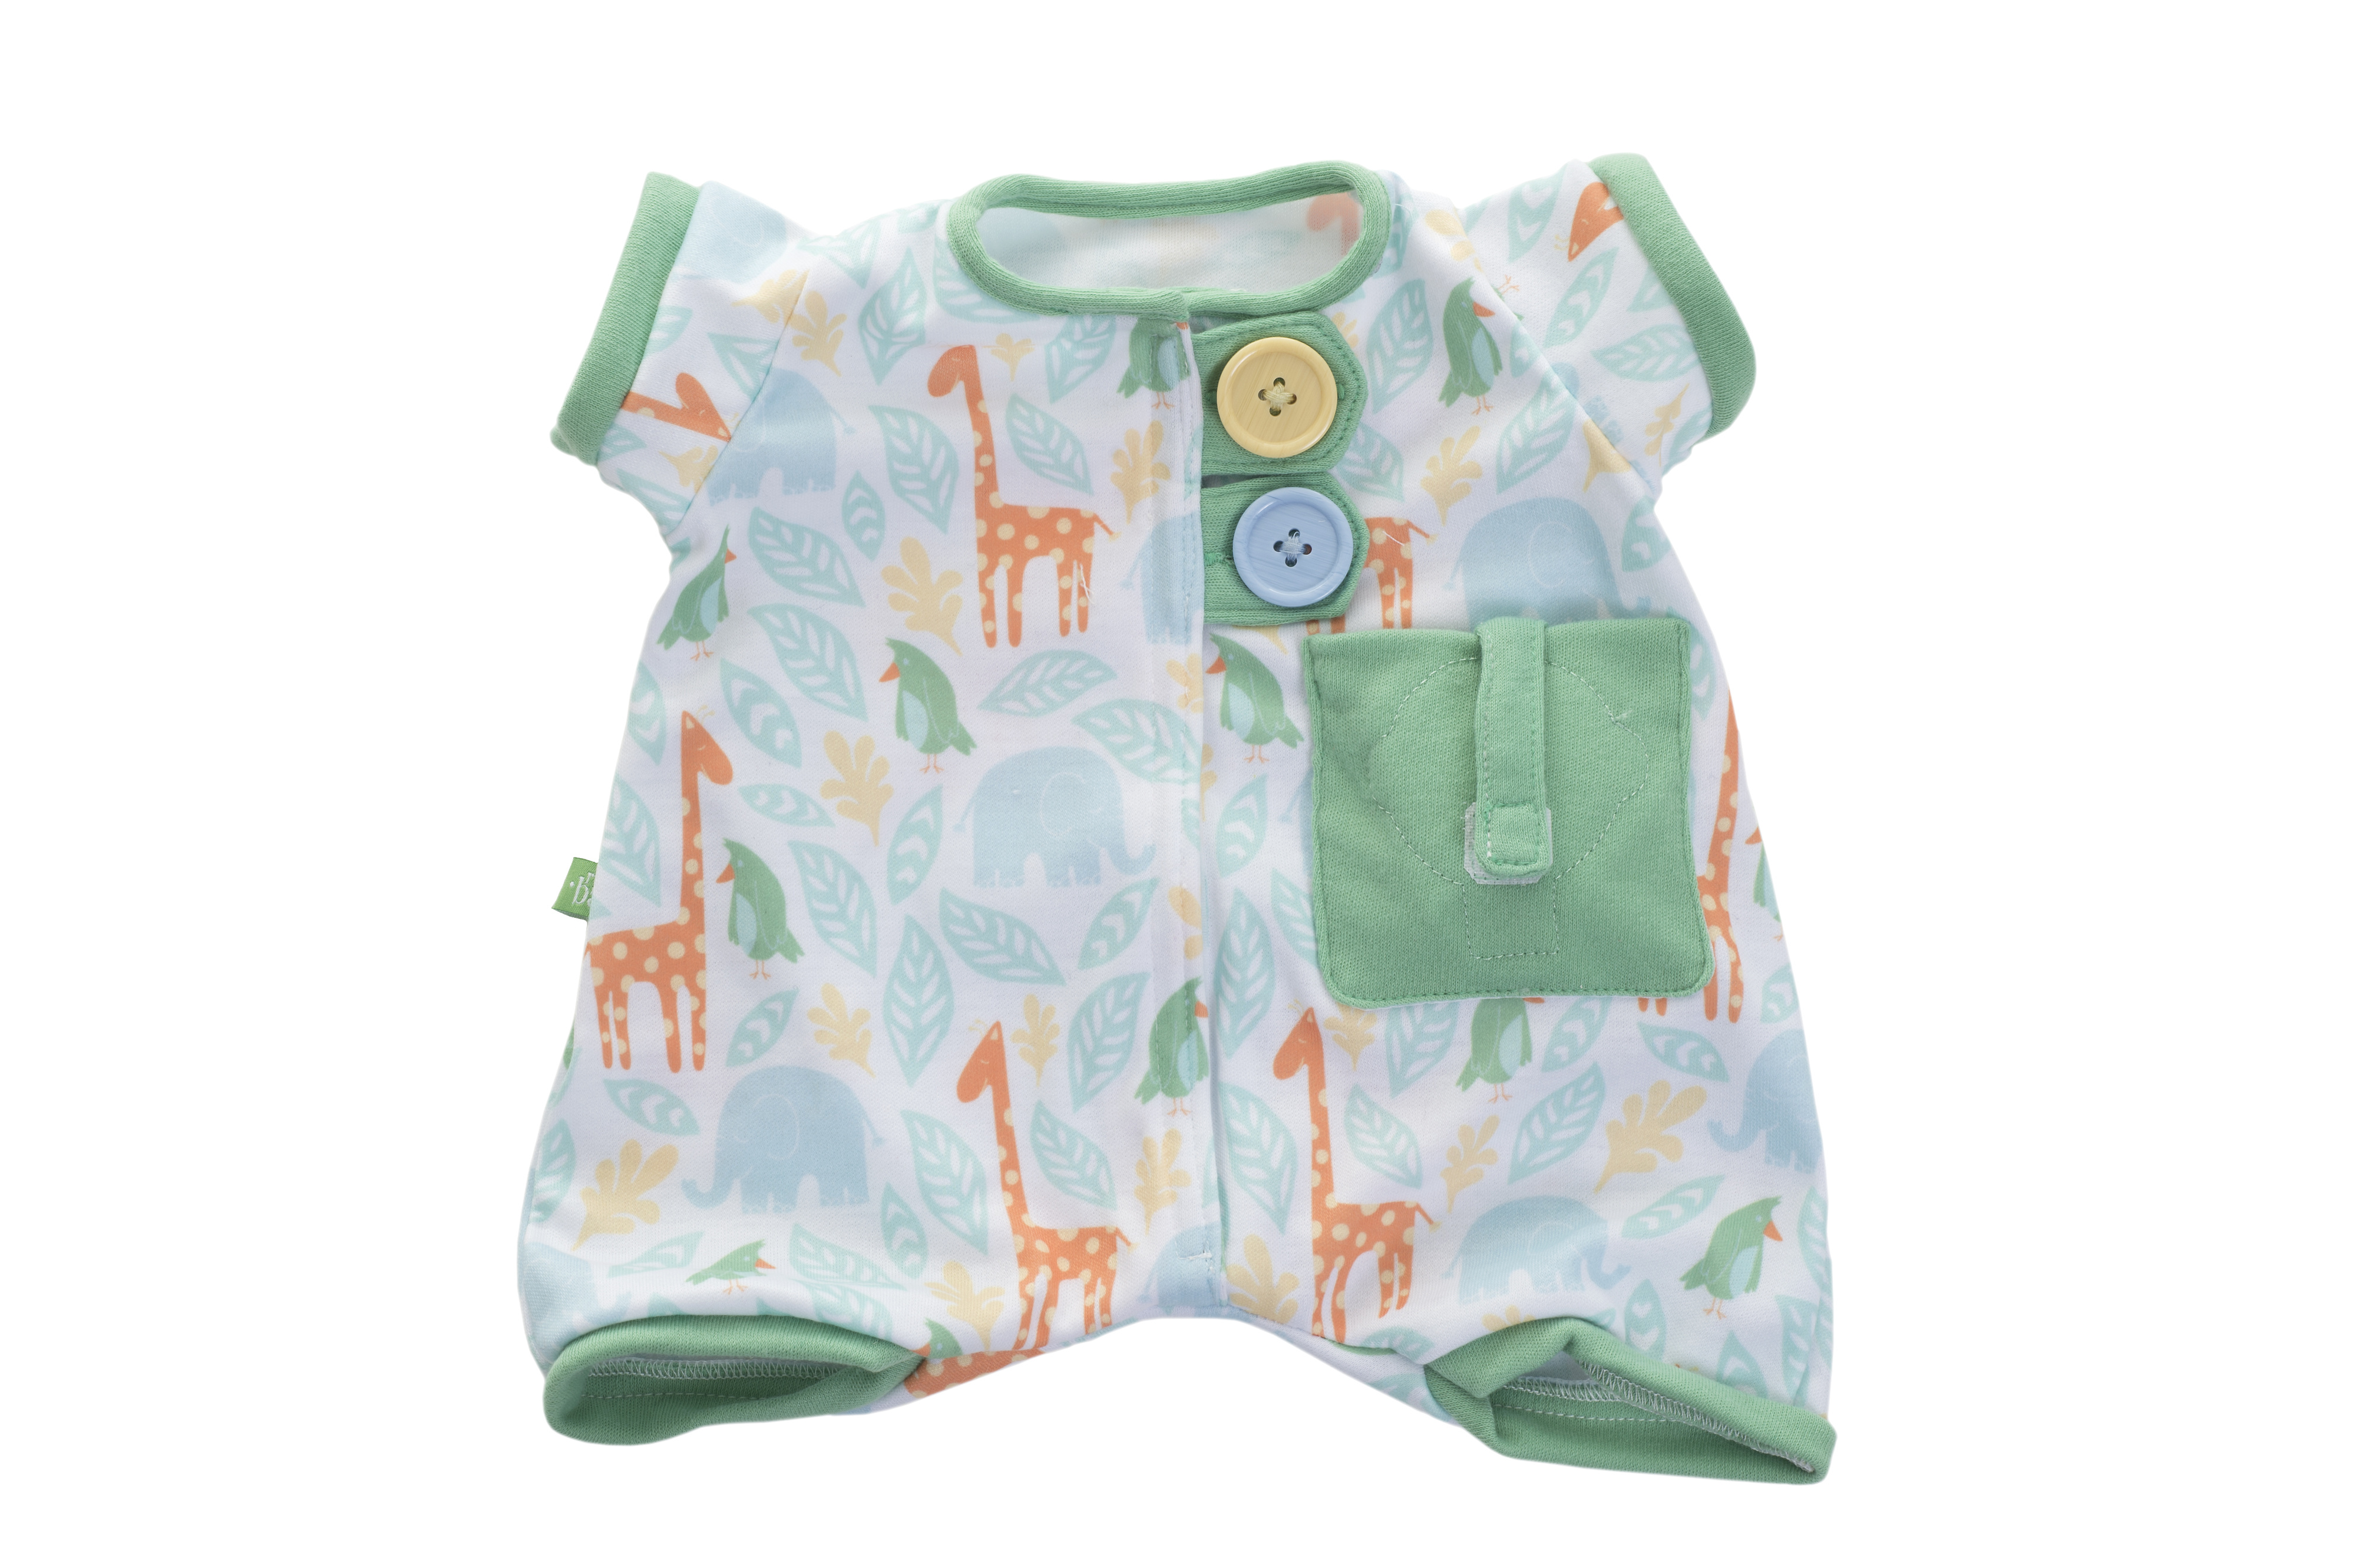 Doll clothes rubens barn doll clothes green pajamas baby